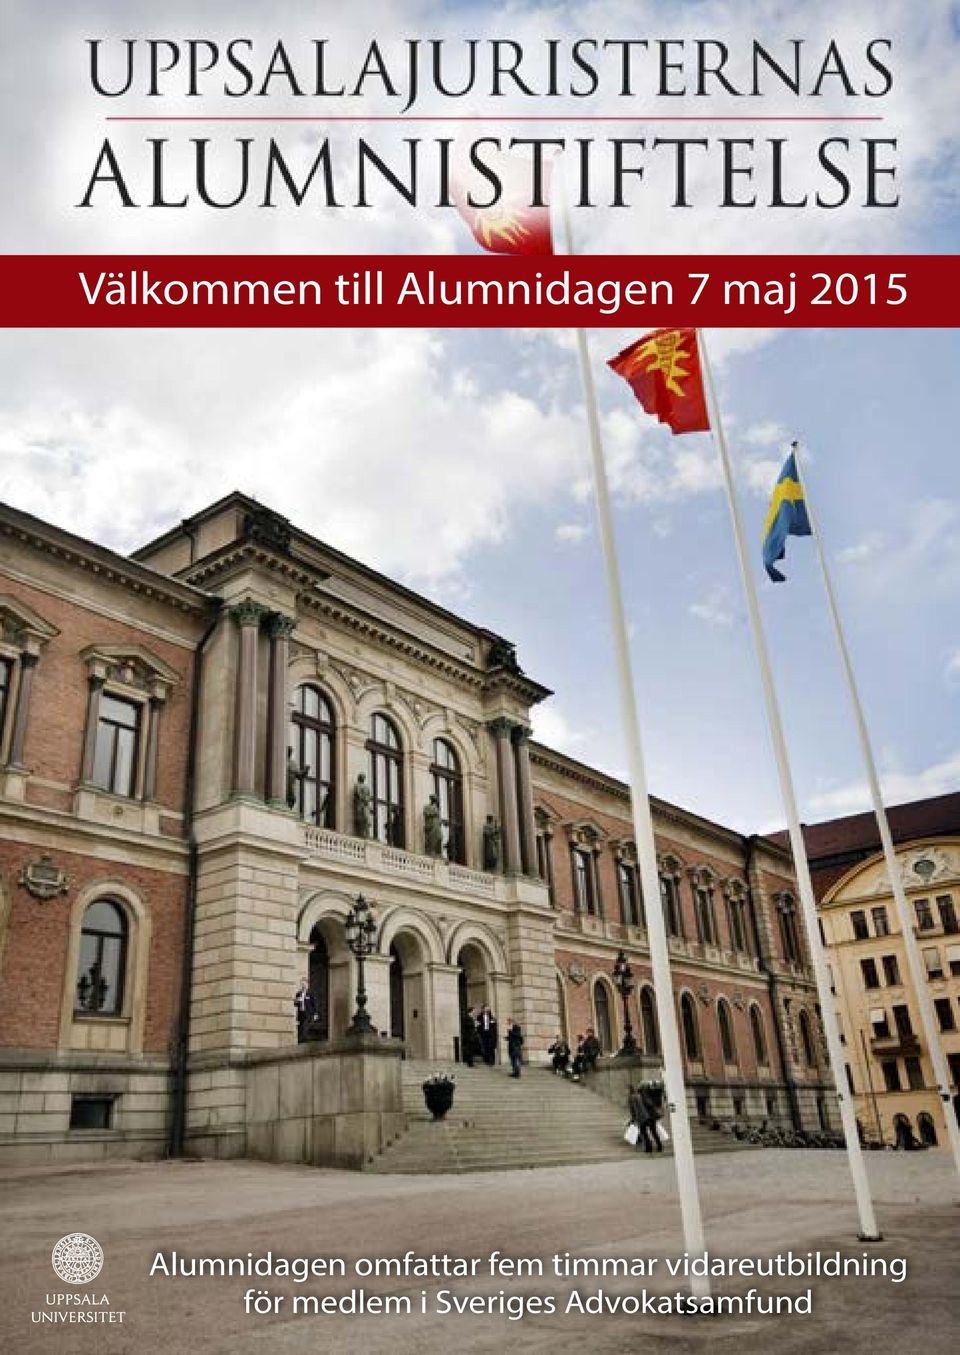 timmar vidareutbildning för medlem i Sveriges Advokatsamfund